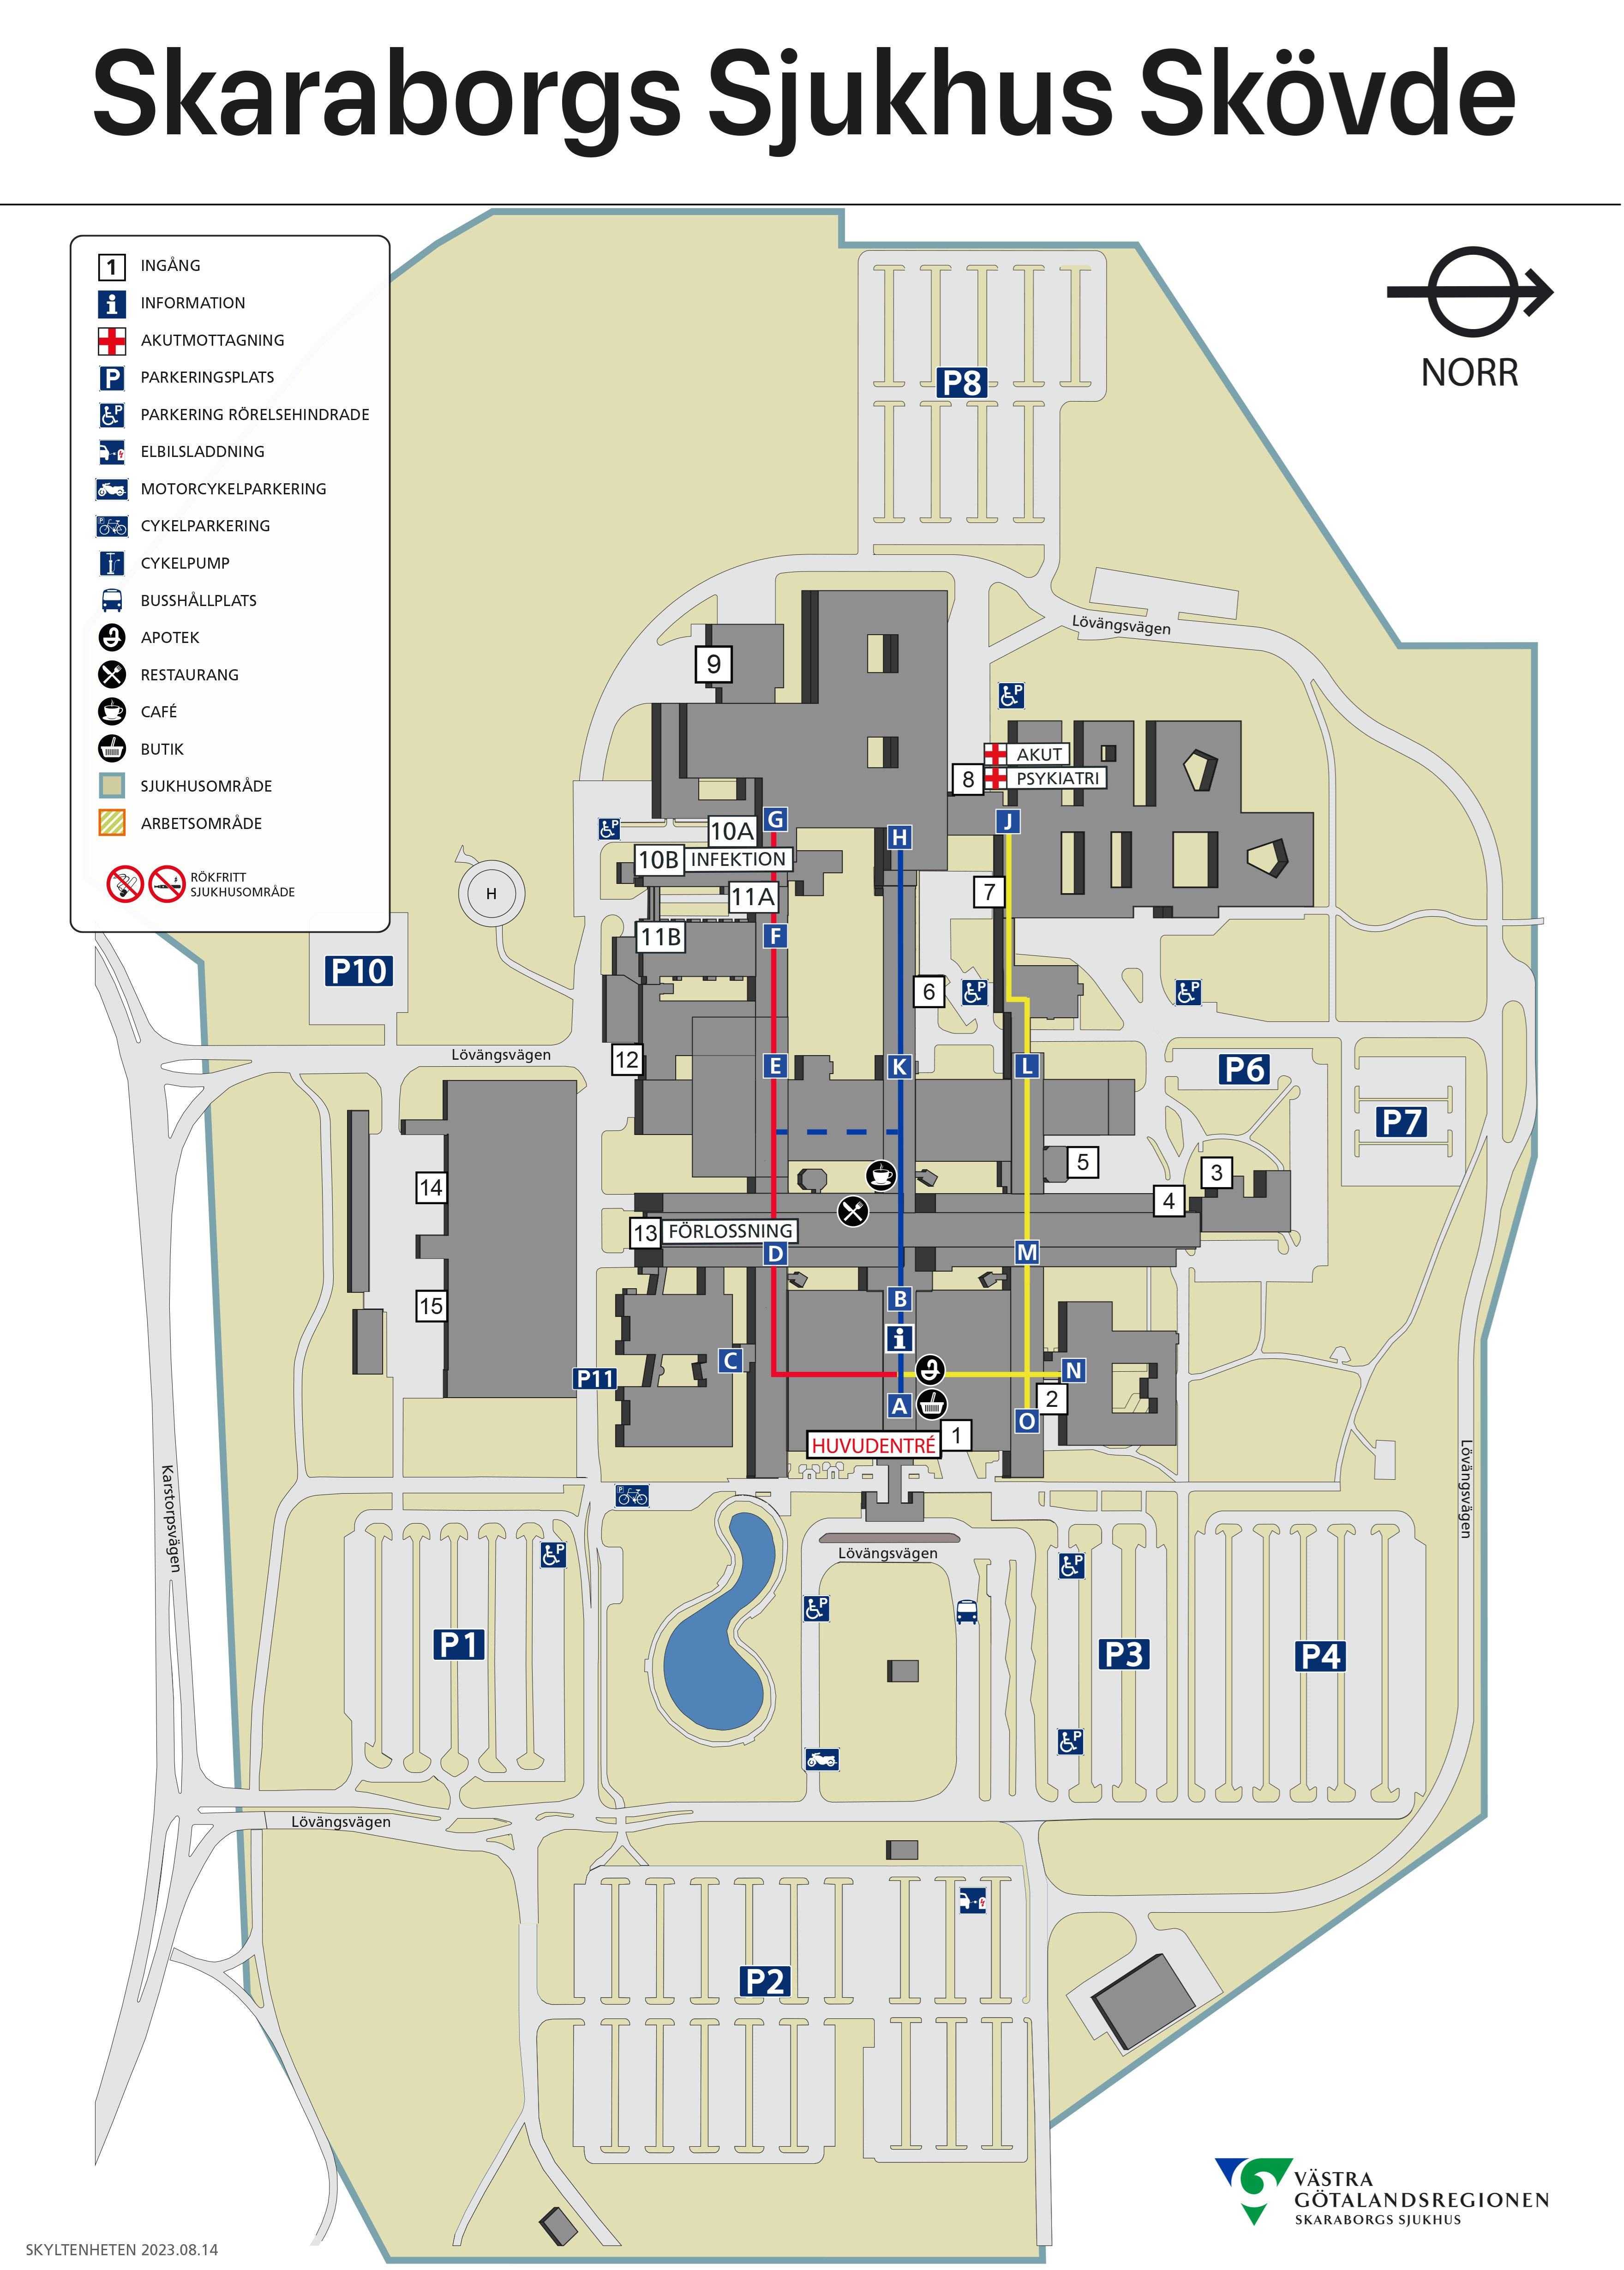 Karta över entréer och parkeringar Skaraborgs sjukhus skövde